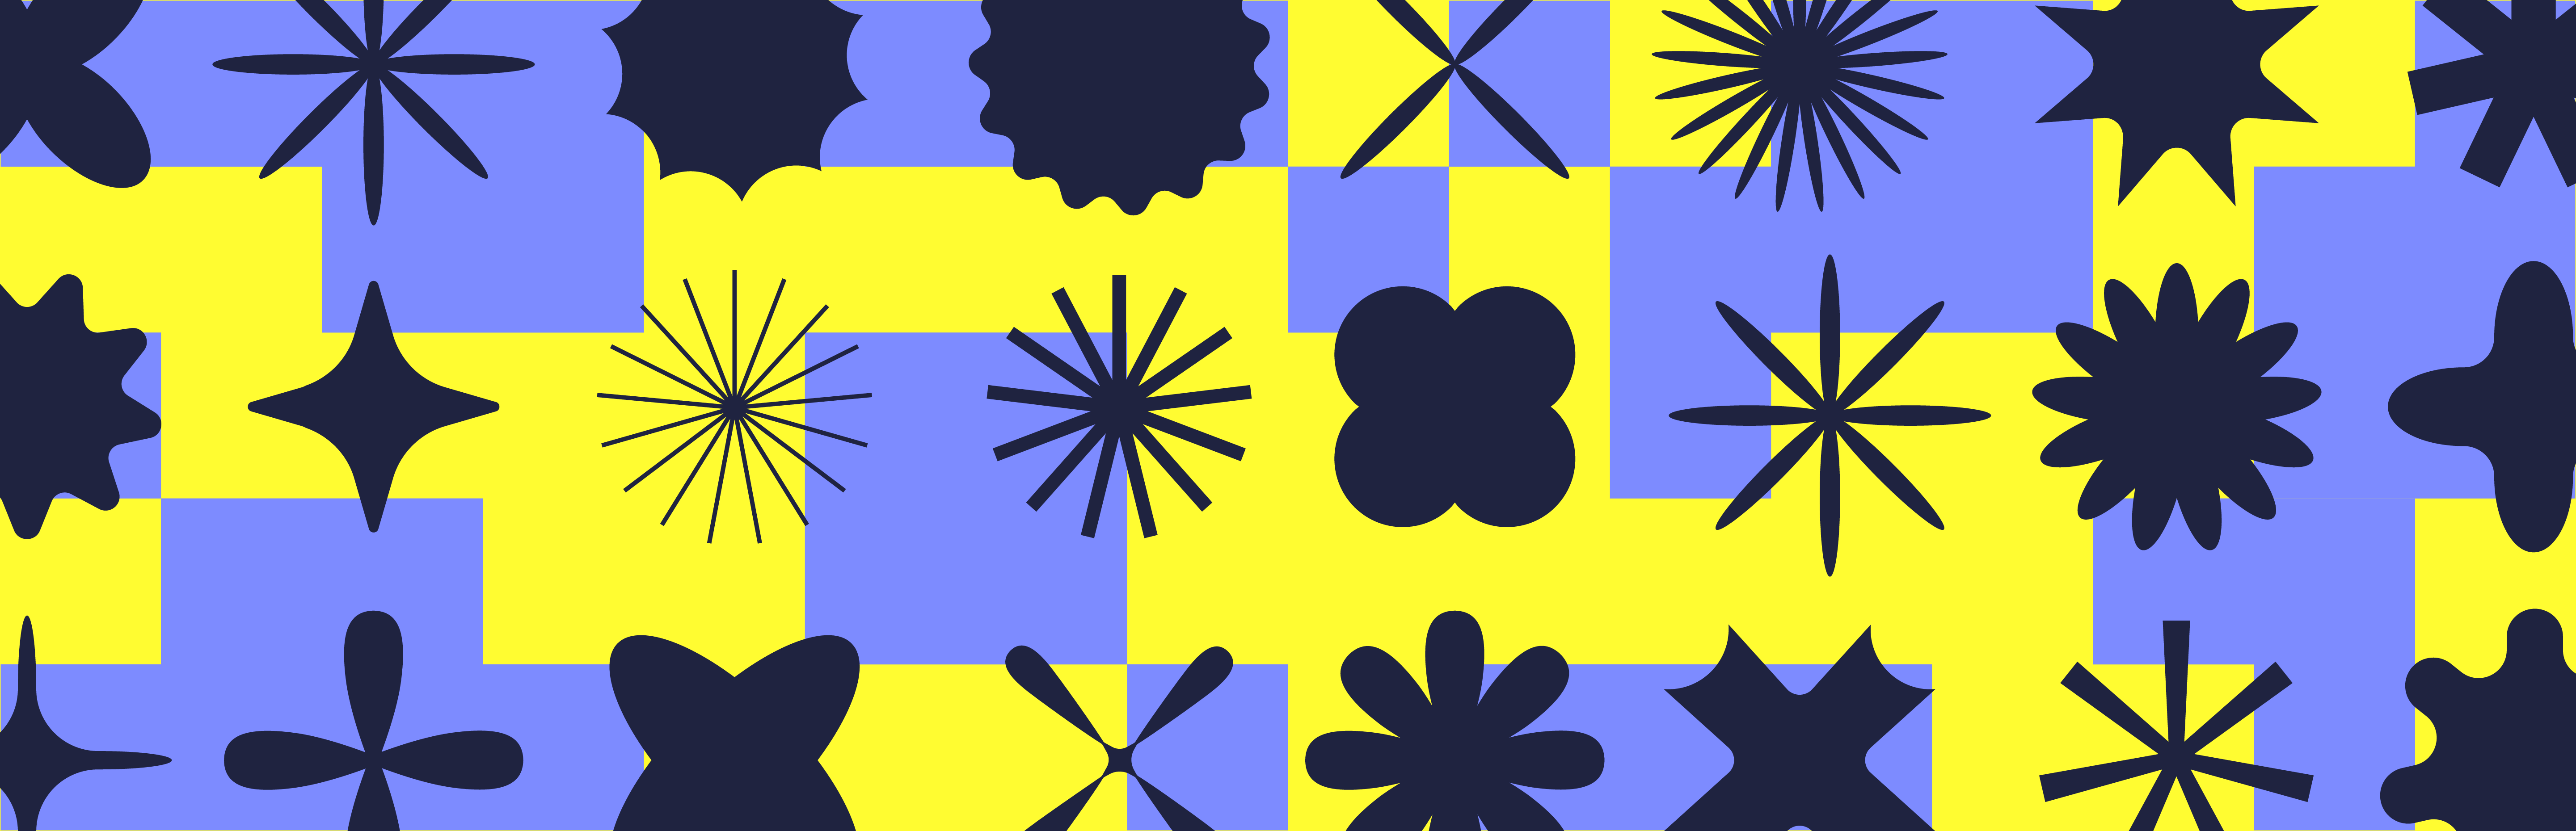 蓝黄相间的方格背景，黑色形状